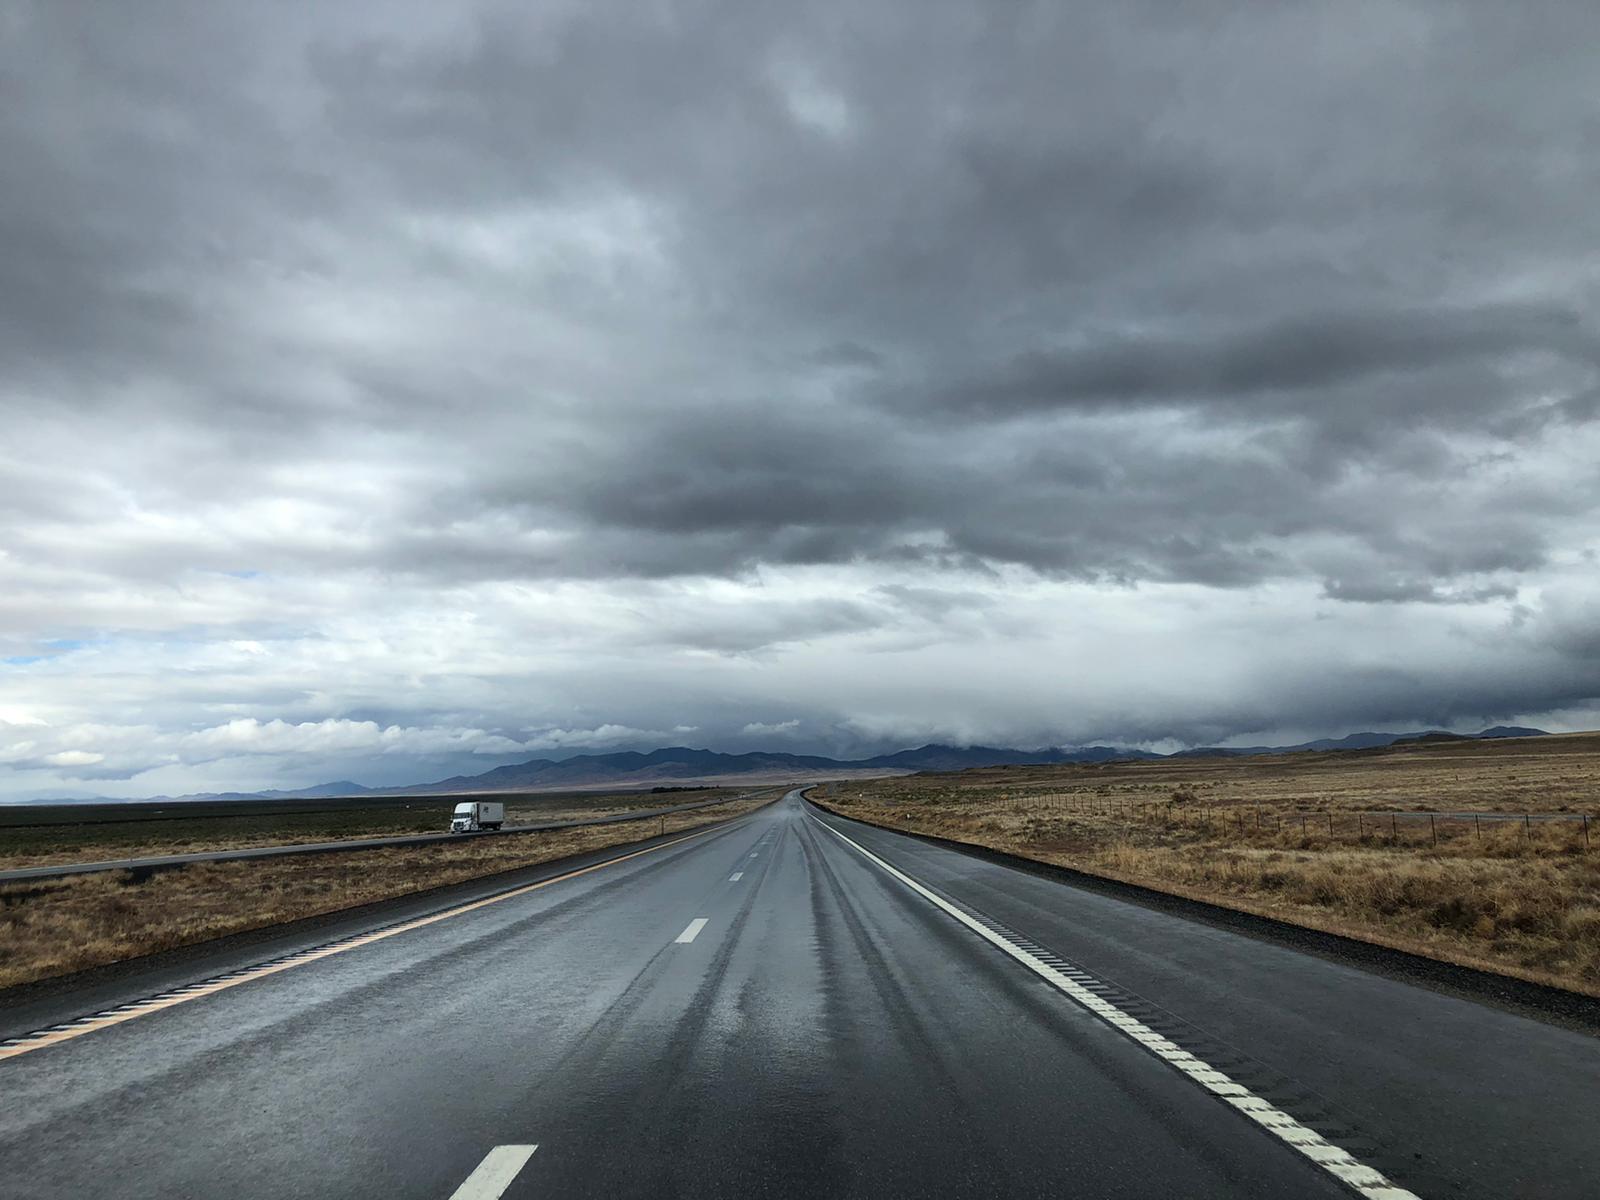 The Nevada desert highway. Martin Avila.